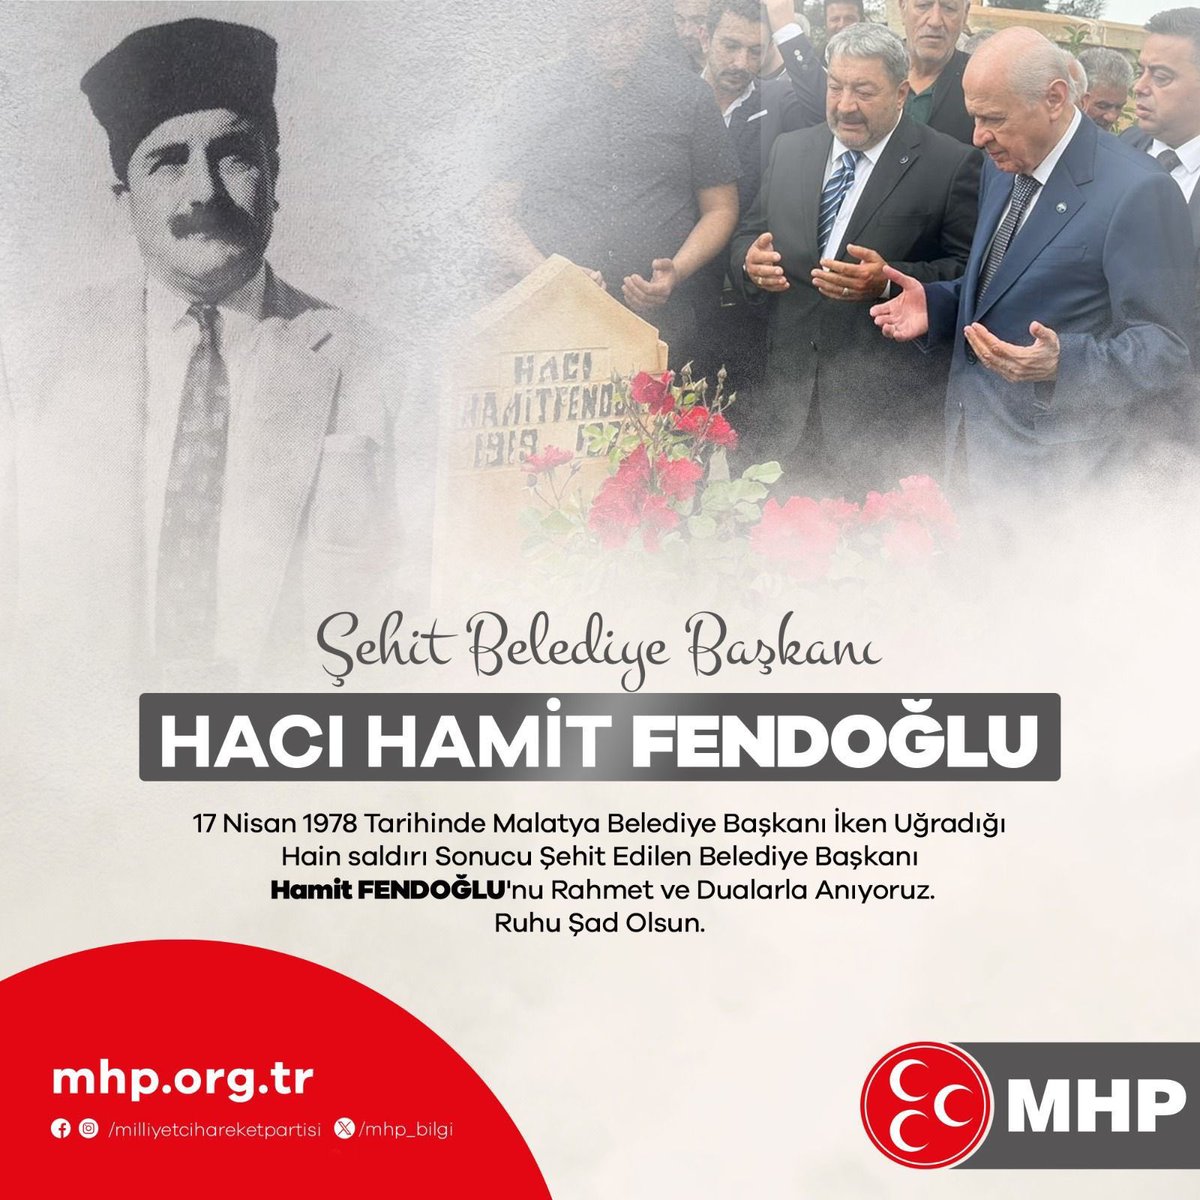 17 Nisan 1978 tarihinde Malatya Belediye Başkanı iken uğradığı hain saldırı sonucu şehit edilen Belediye Başkanı Hamit FENDOĞLU'nu rahmet ve dualarla anıyorum. Ruhu şad olsun.